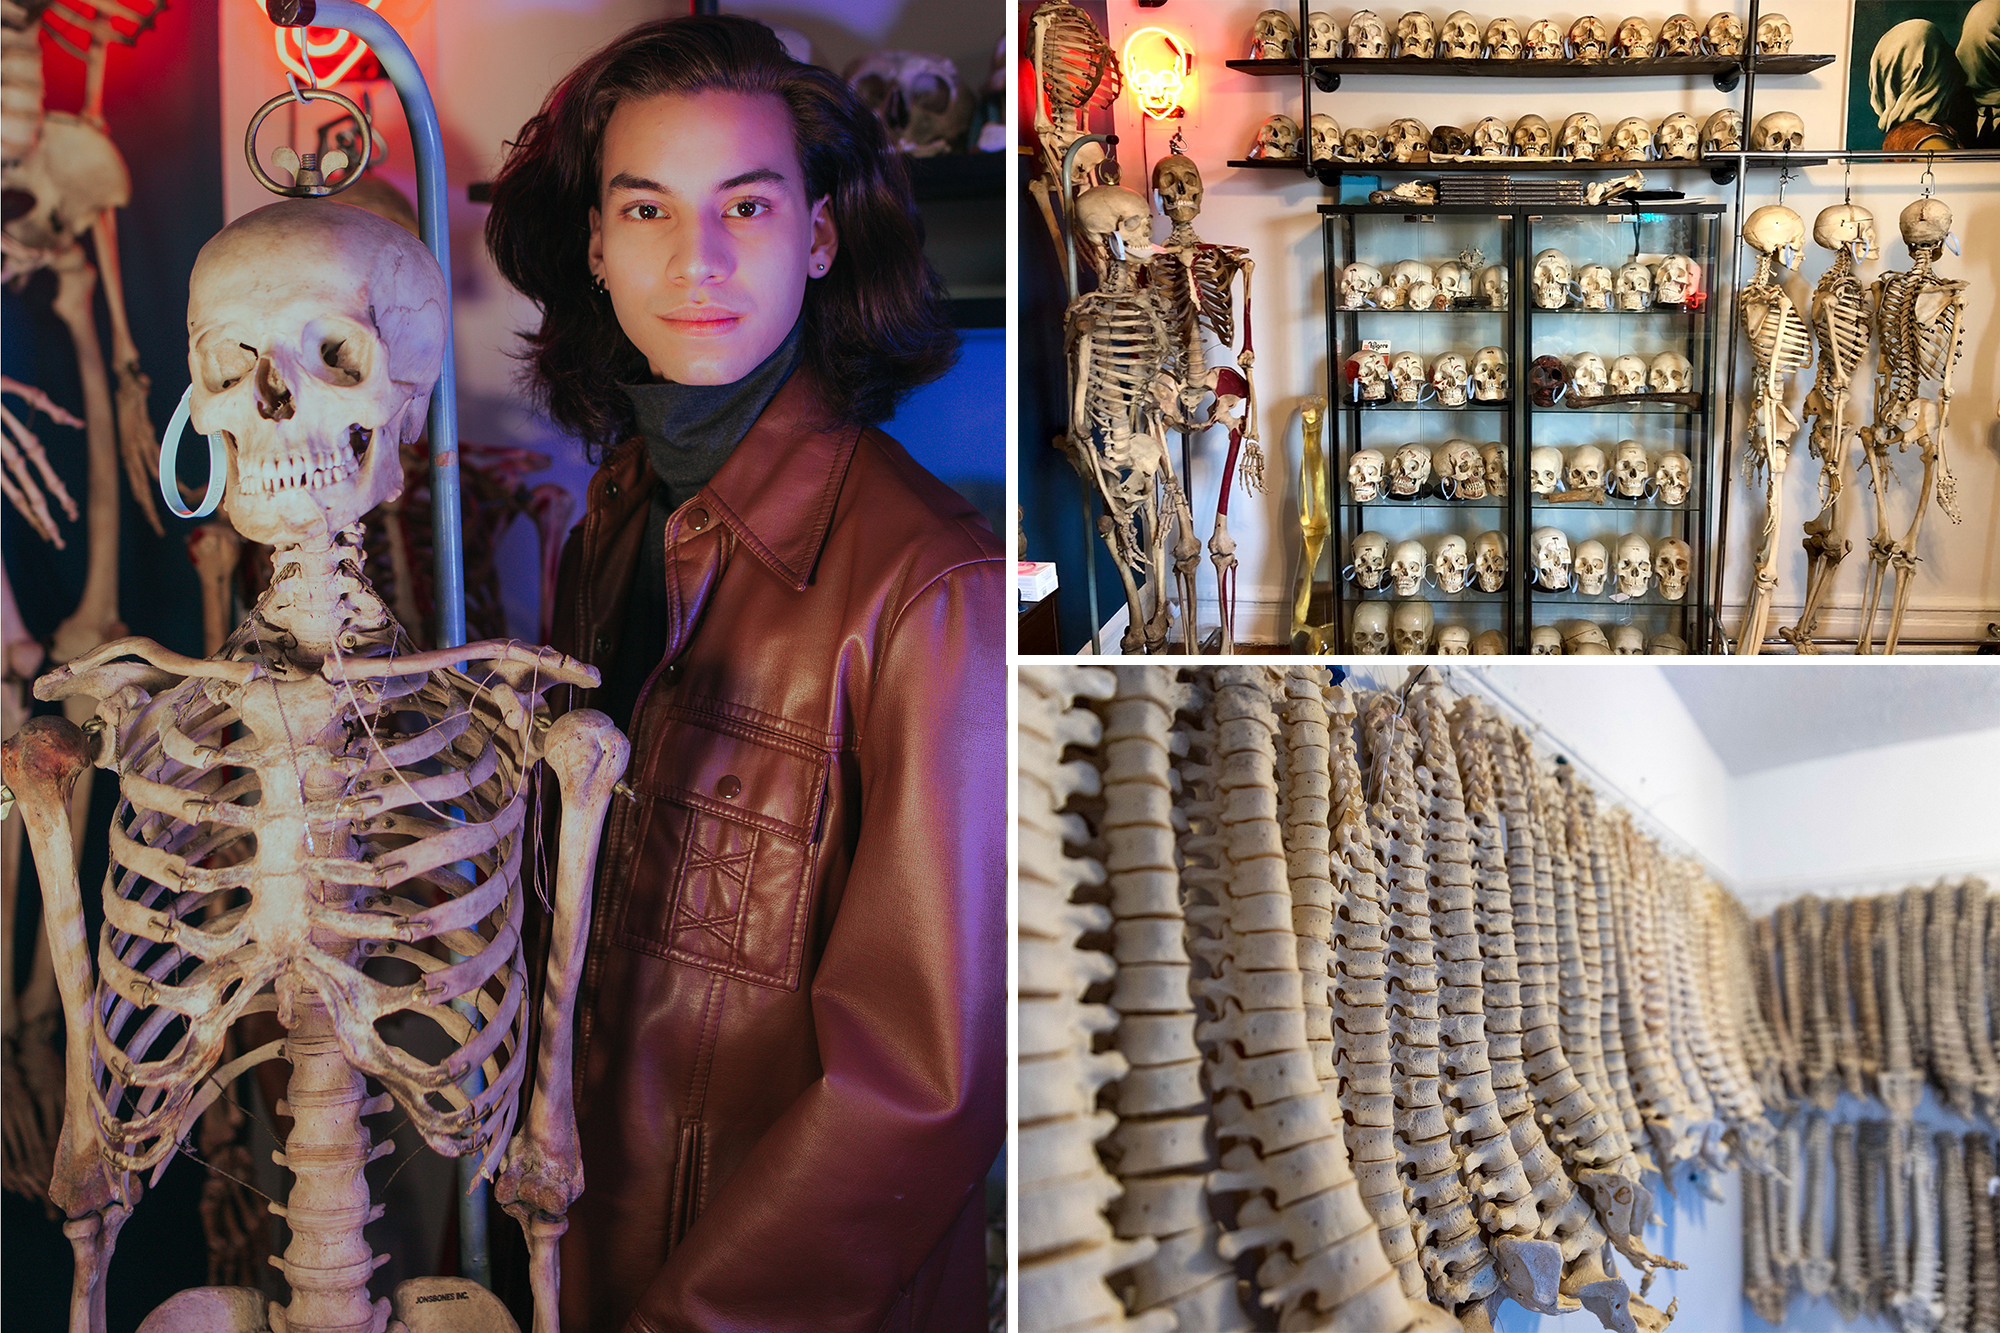 El coleccionista de huesos: Este hombre de Nueva York tiene más de 200 esqueletos, espinas y cráneos en su casa (Fotos)